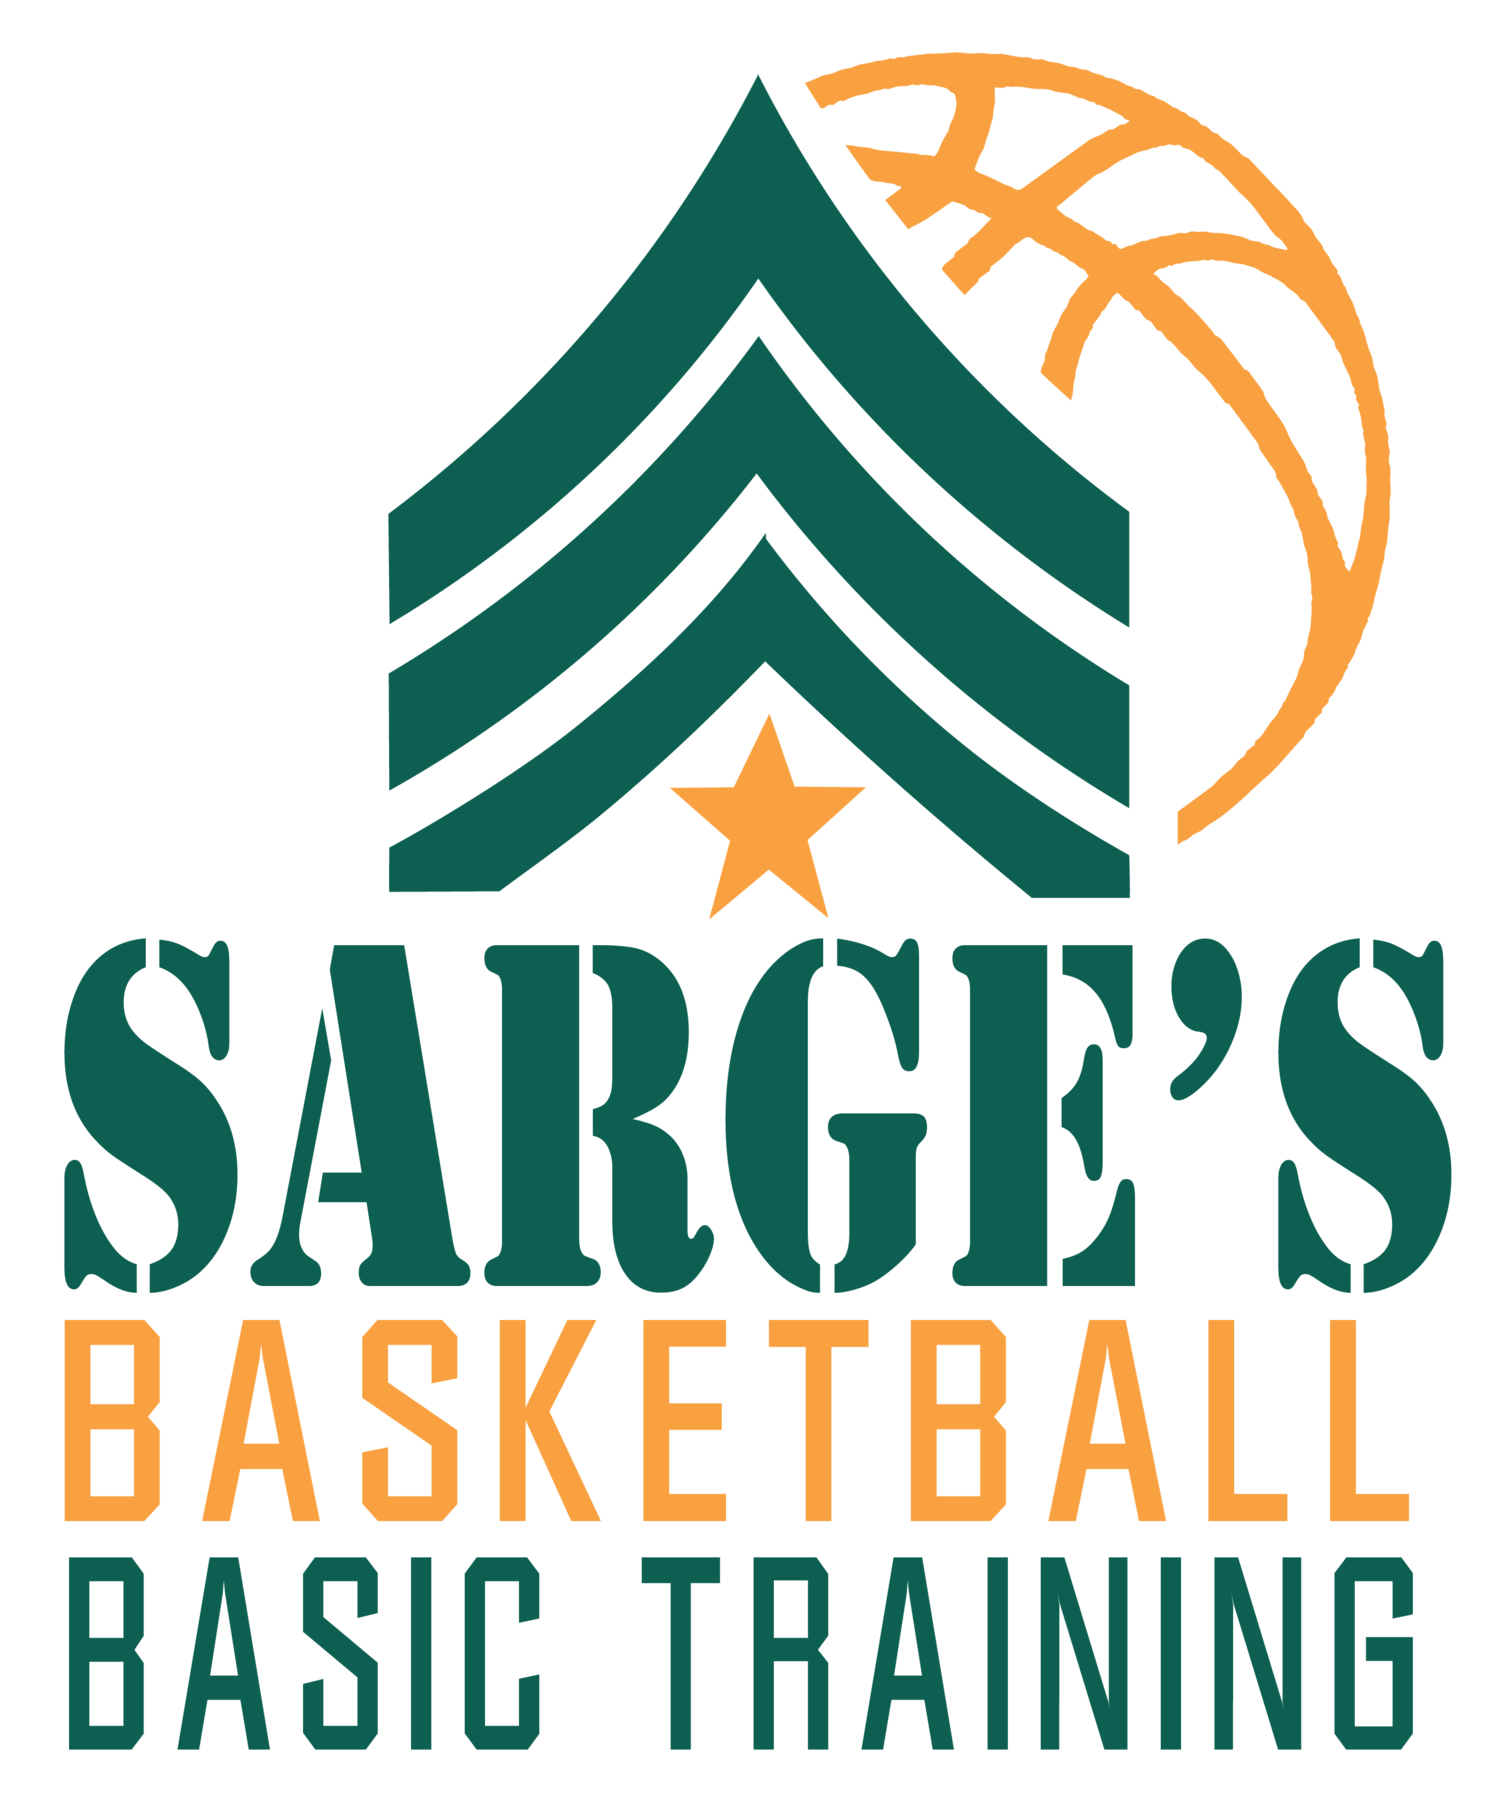 SARGE'S BASKETBALL BASIC TRAINING